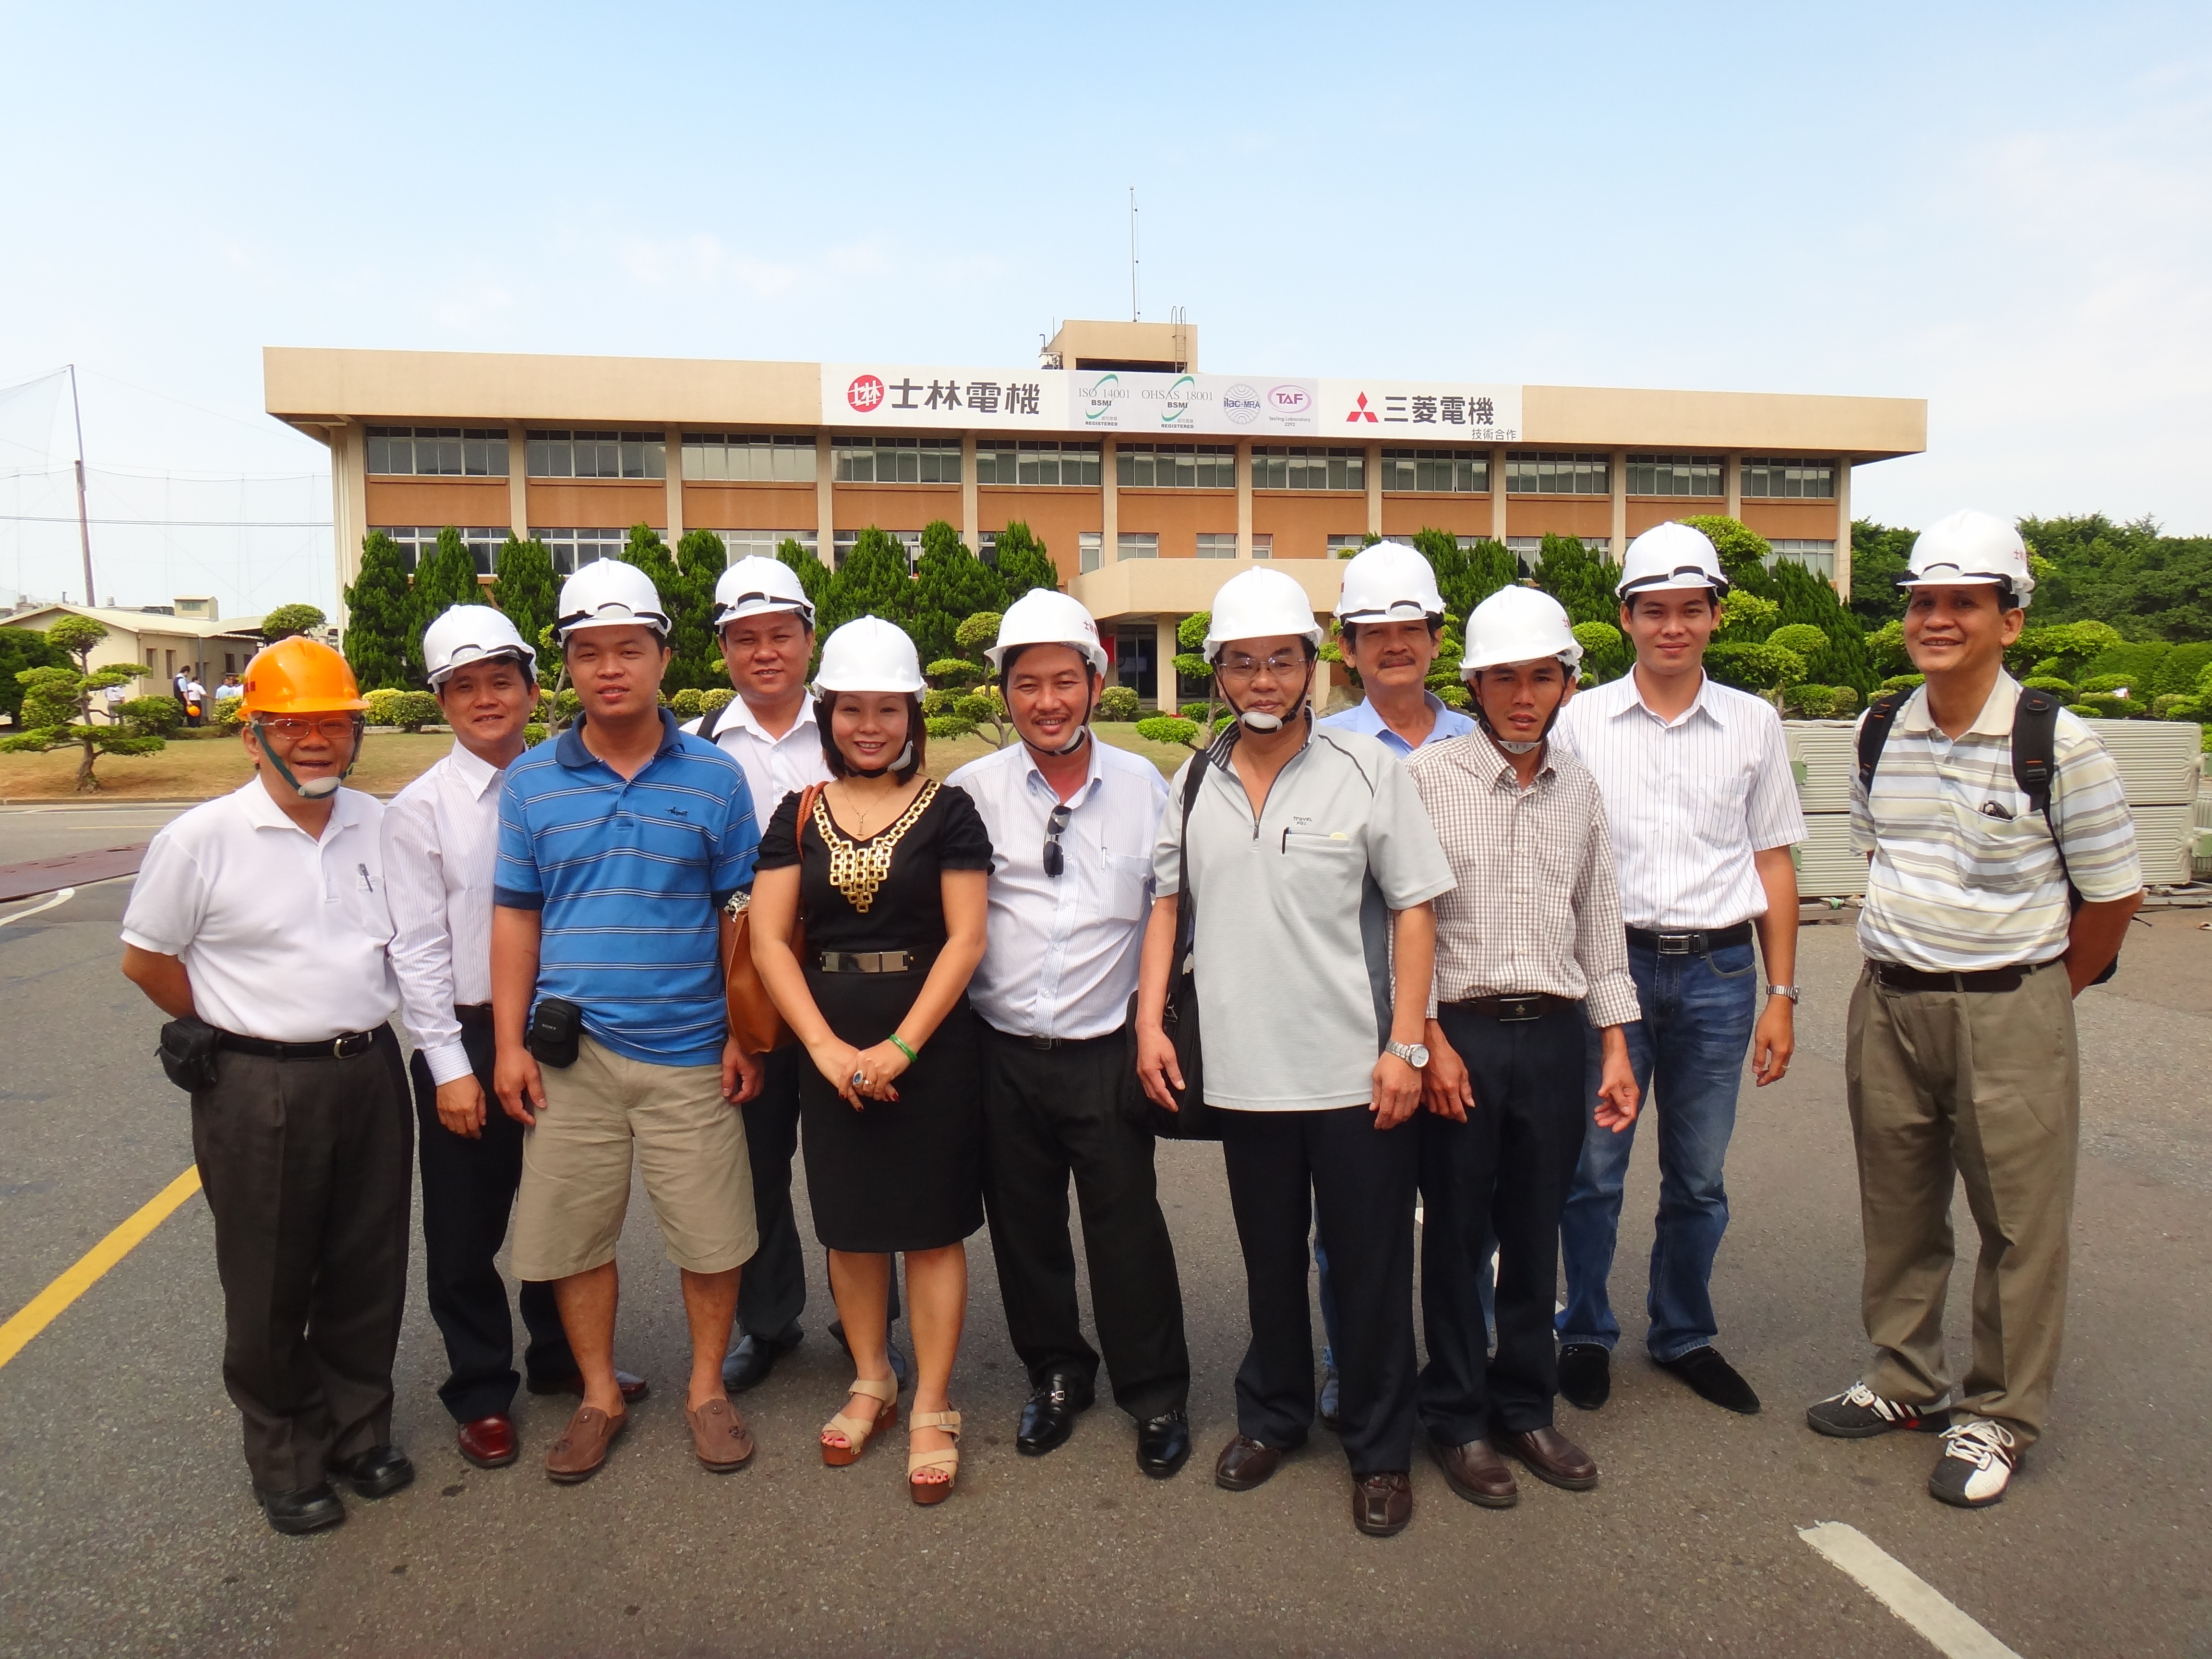 Pelanggan Vietnam mengunjungi Shihlin Electric